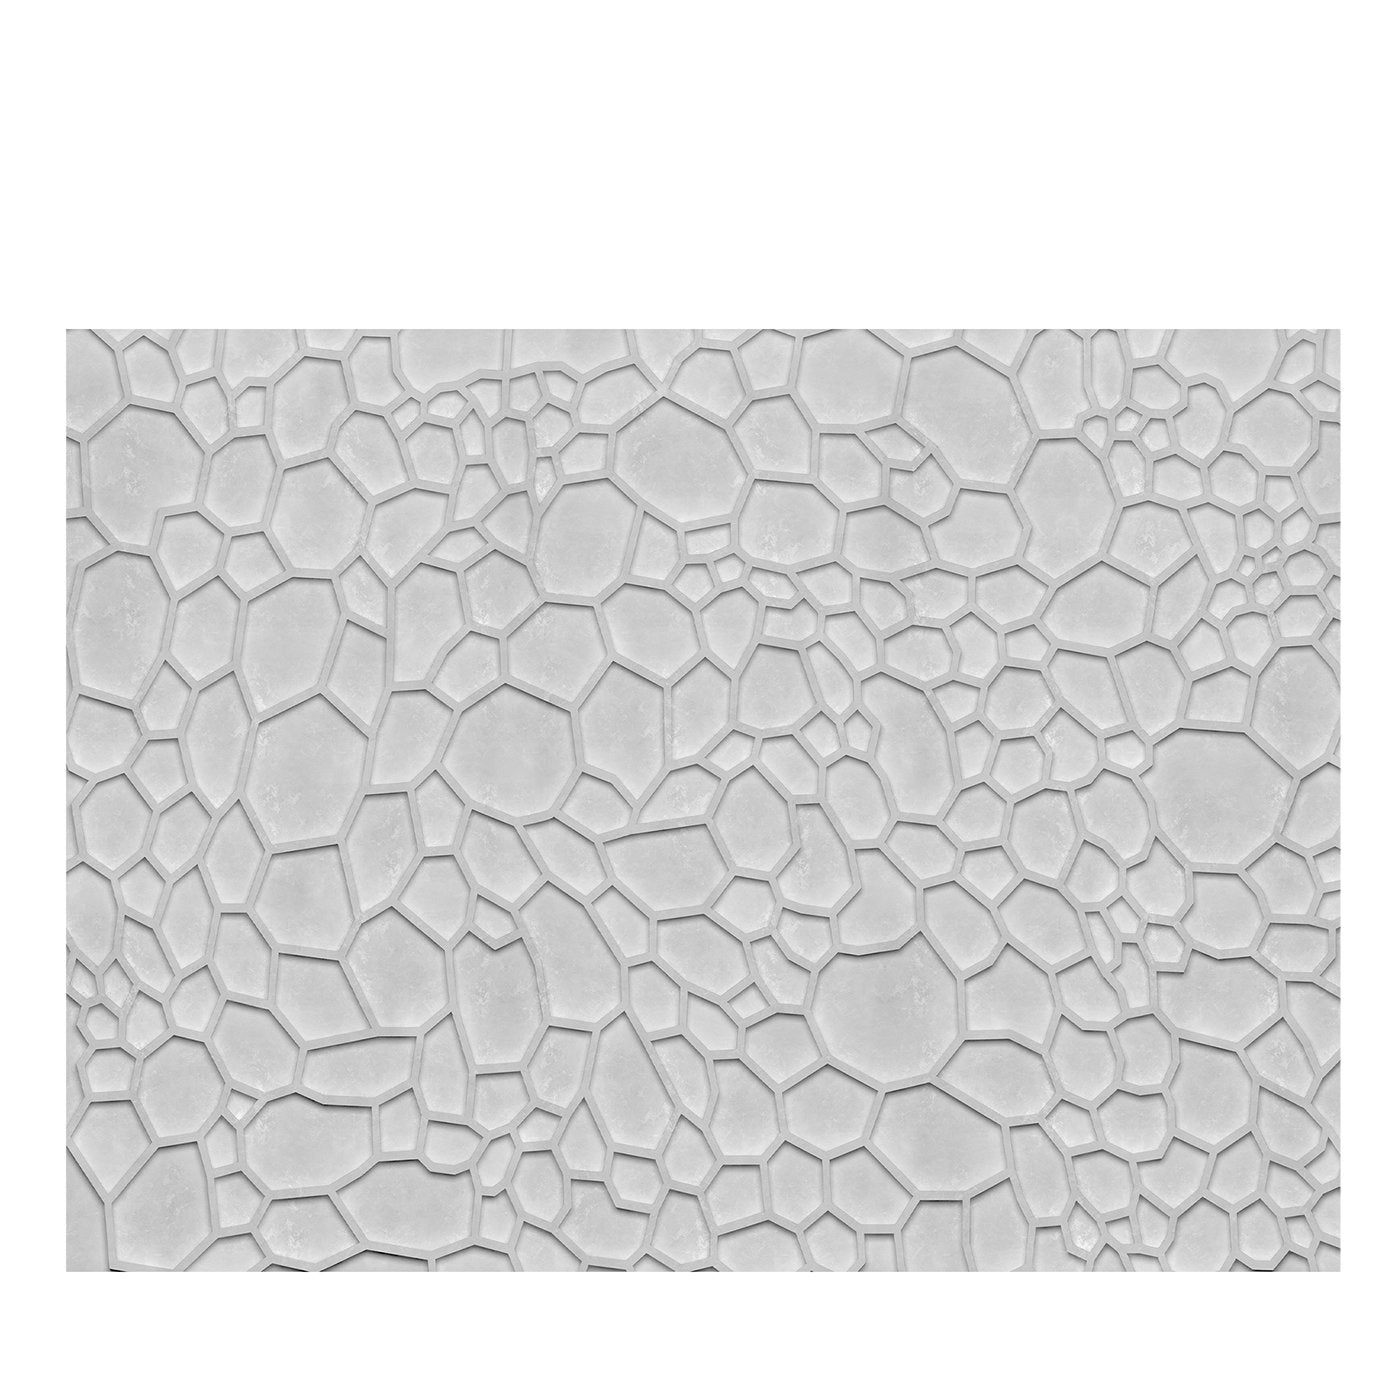 Gray Abstract Wallpaper #9 - Main view